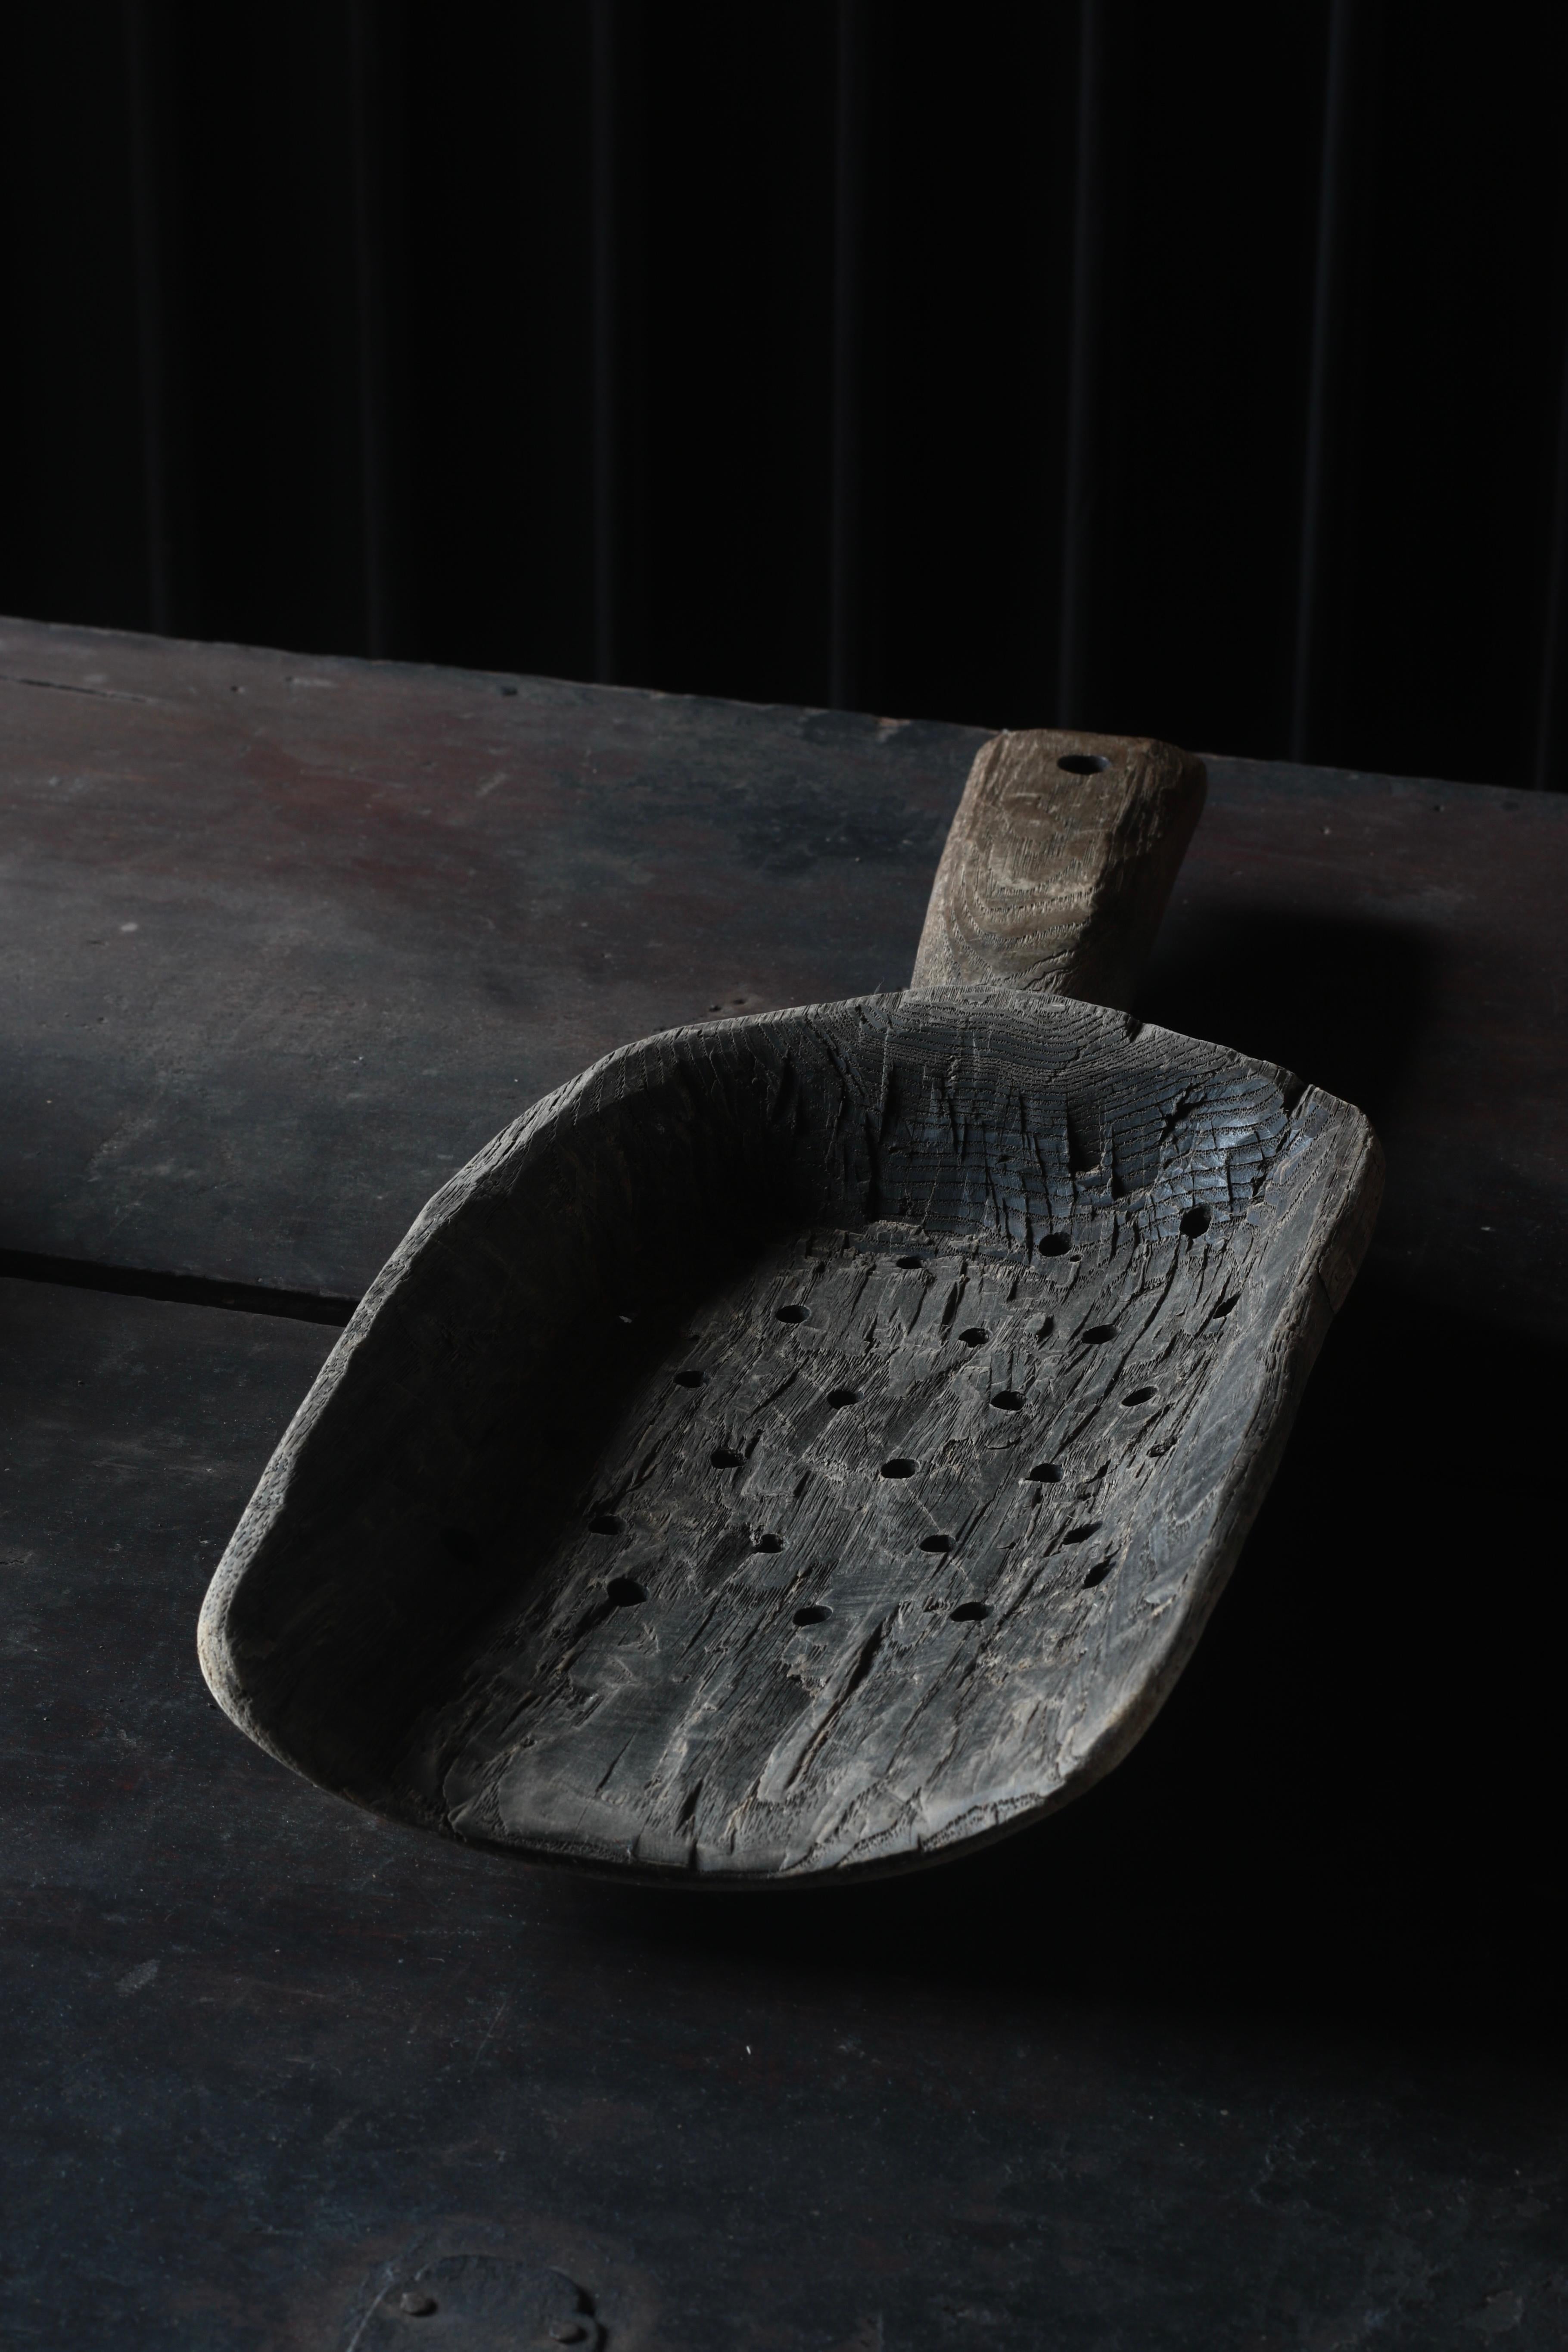 Dies ist eine hölzerne Schaufel, die in alten Bauern in Japan verwendet wurde.

Er ist aus Kastanienholz gefertigt und handgeschnitzt.

Es scheint, dass der damalige Benutzer ein Loch gemacht hat, um das Wasser ablaufen zu lassen.

Es scheint, dass